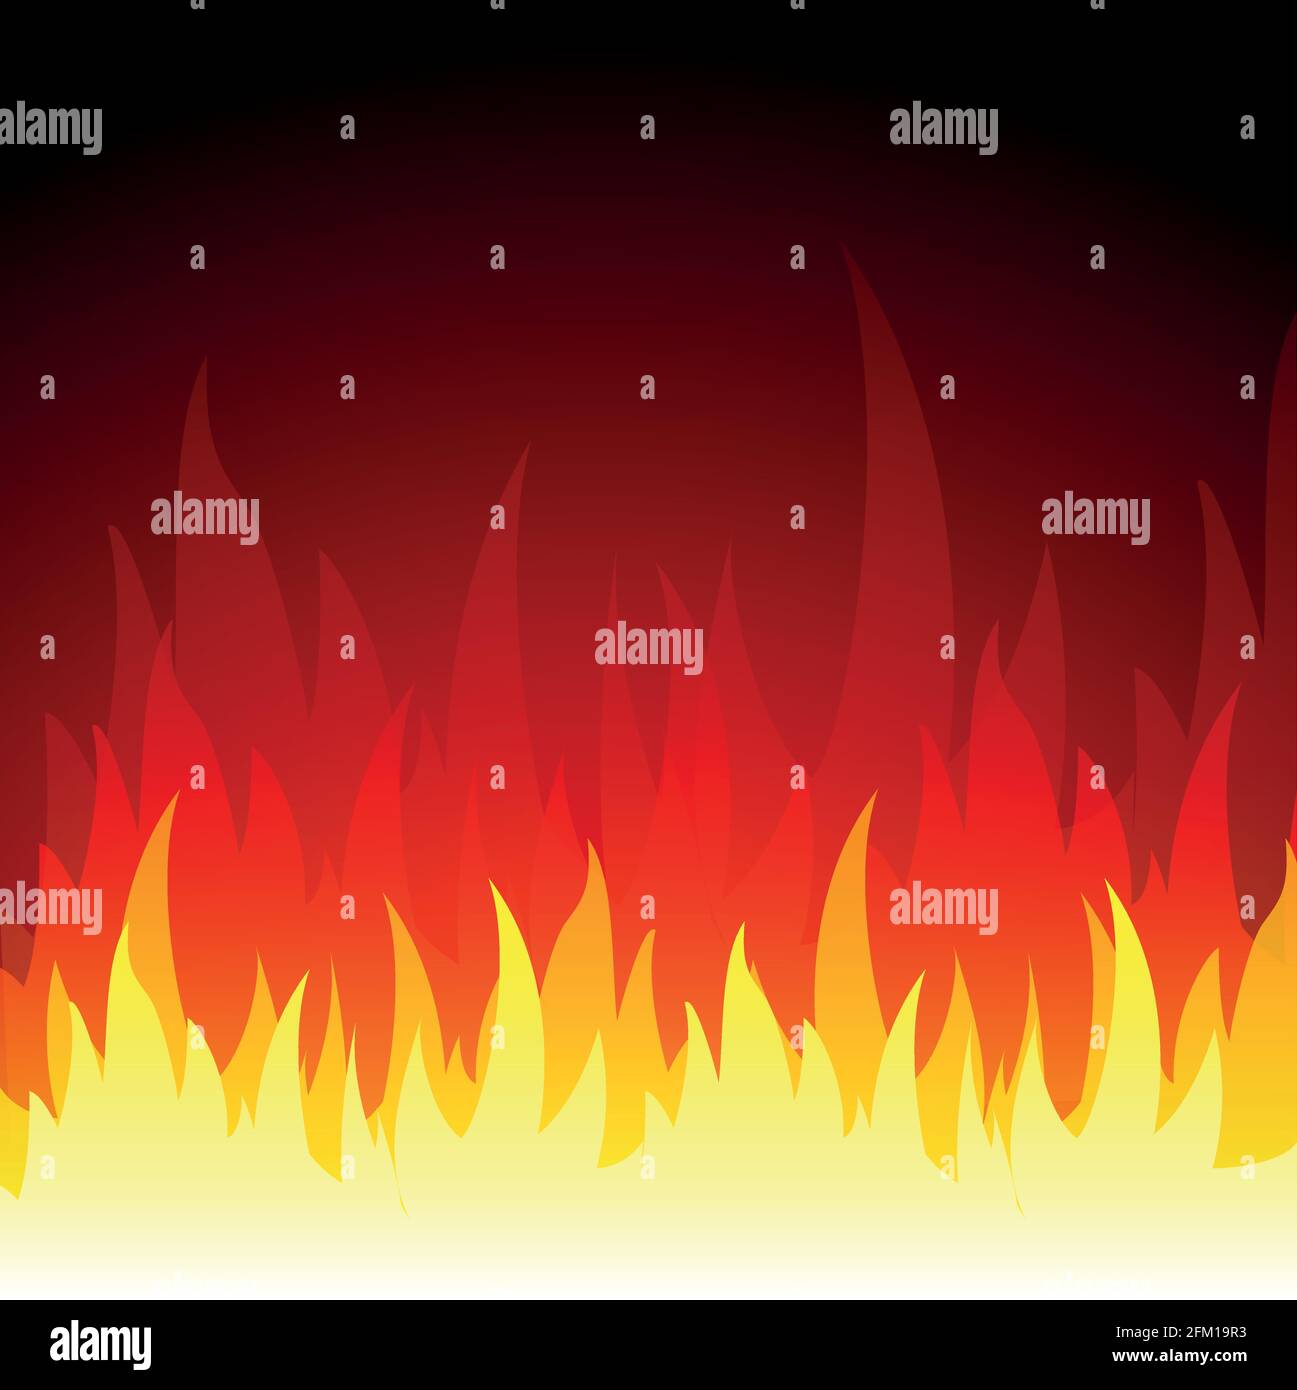 Vektor-Illustration von Feuer Flammen Hintergrund Konzept Stock Vektor